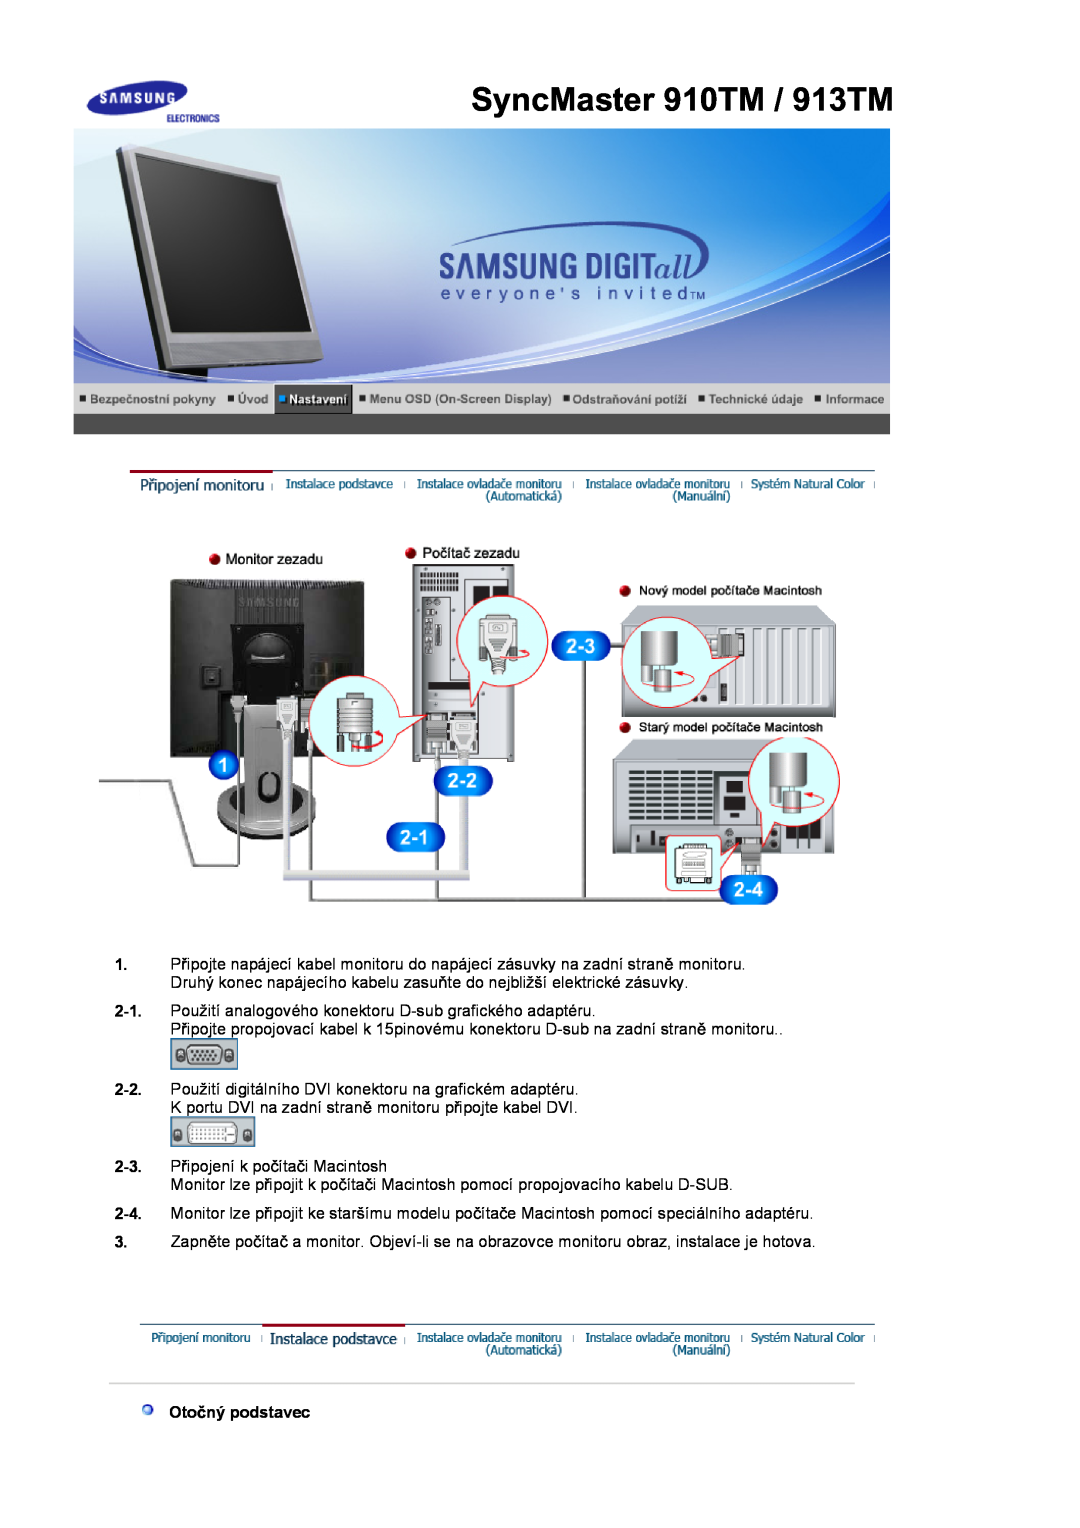 Samsung LS17MJSTSE/EDC, LS19MJSTS7/EDC, LS17MJSKSZ/EDC manual SyncMaster 910TM / 913TM, Otoþný podstavec 